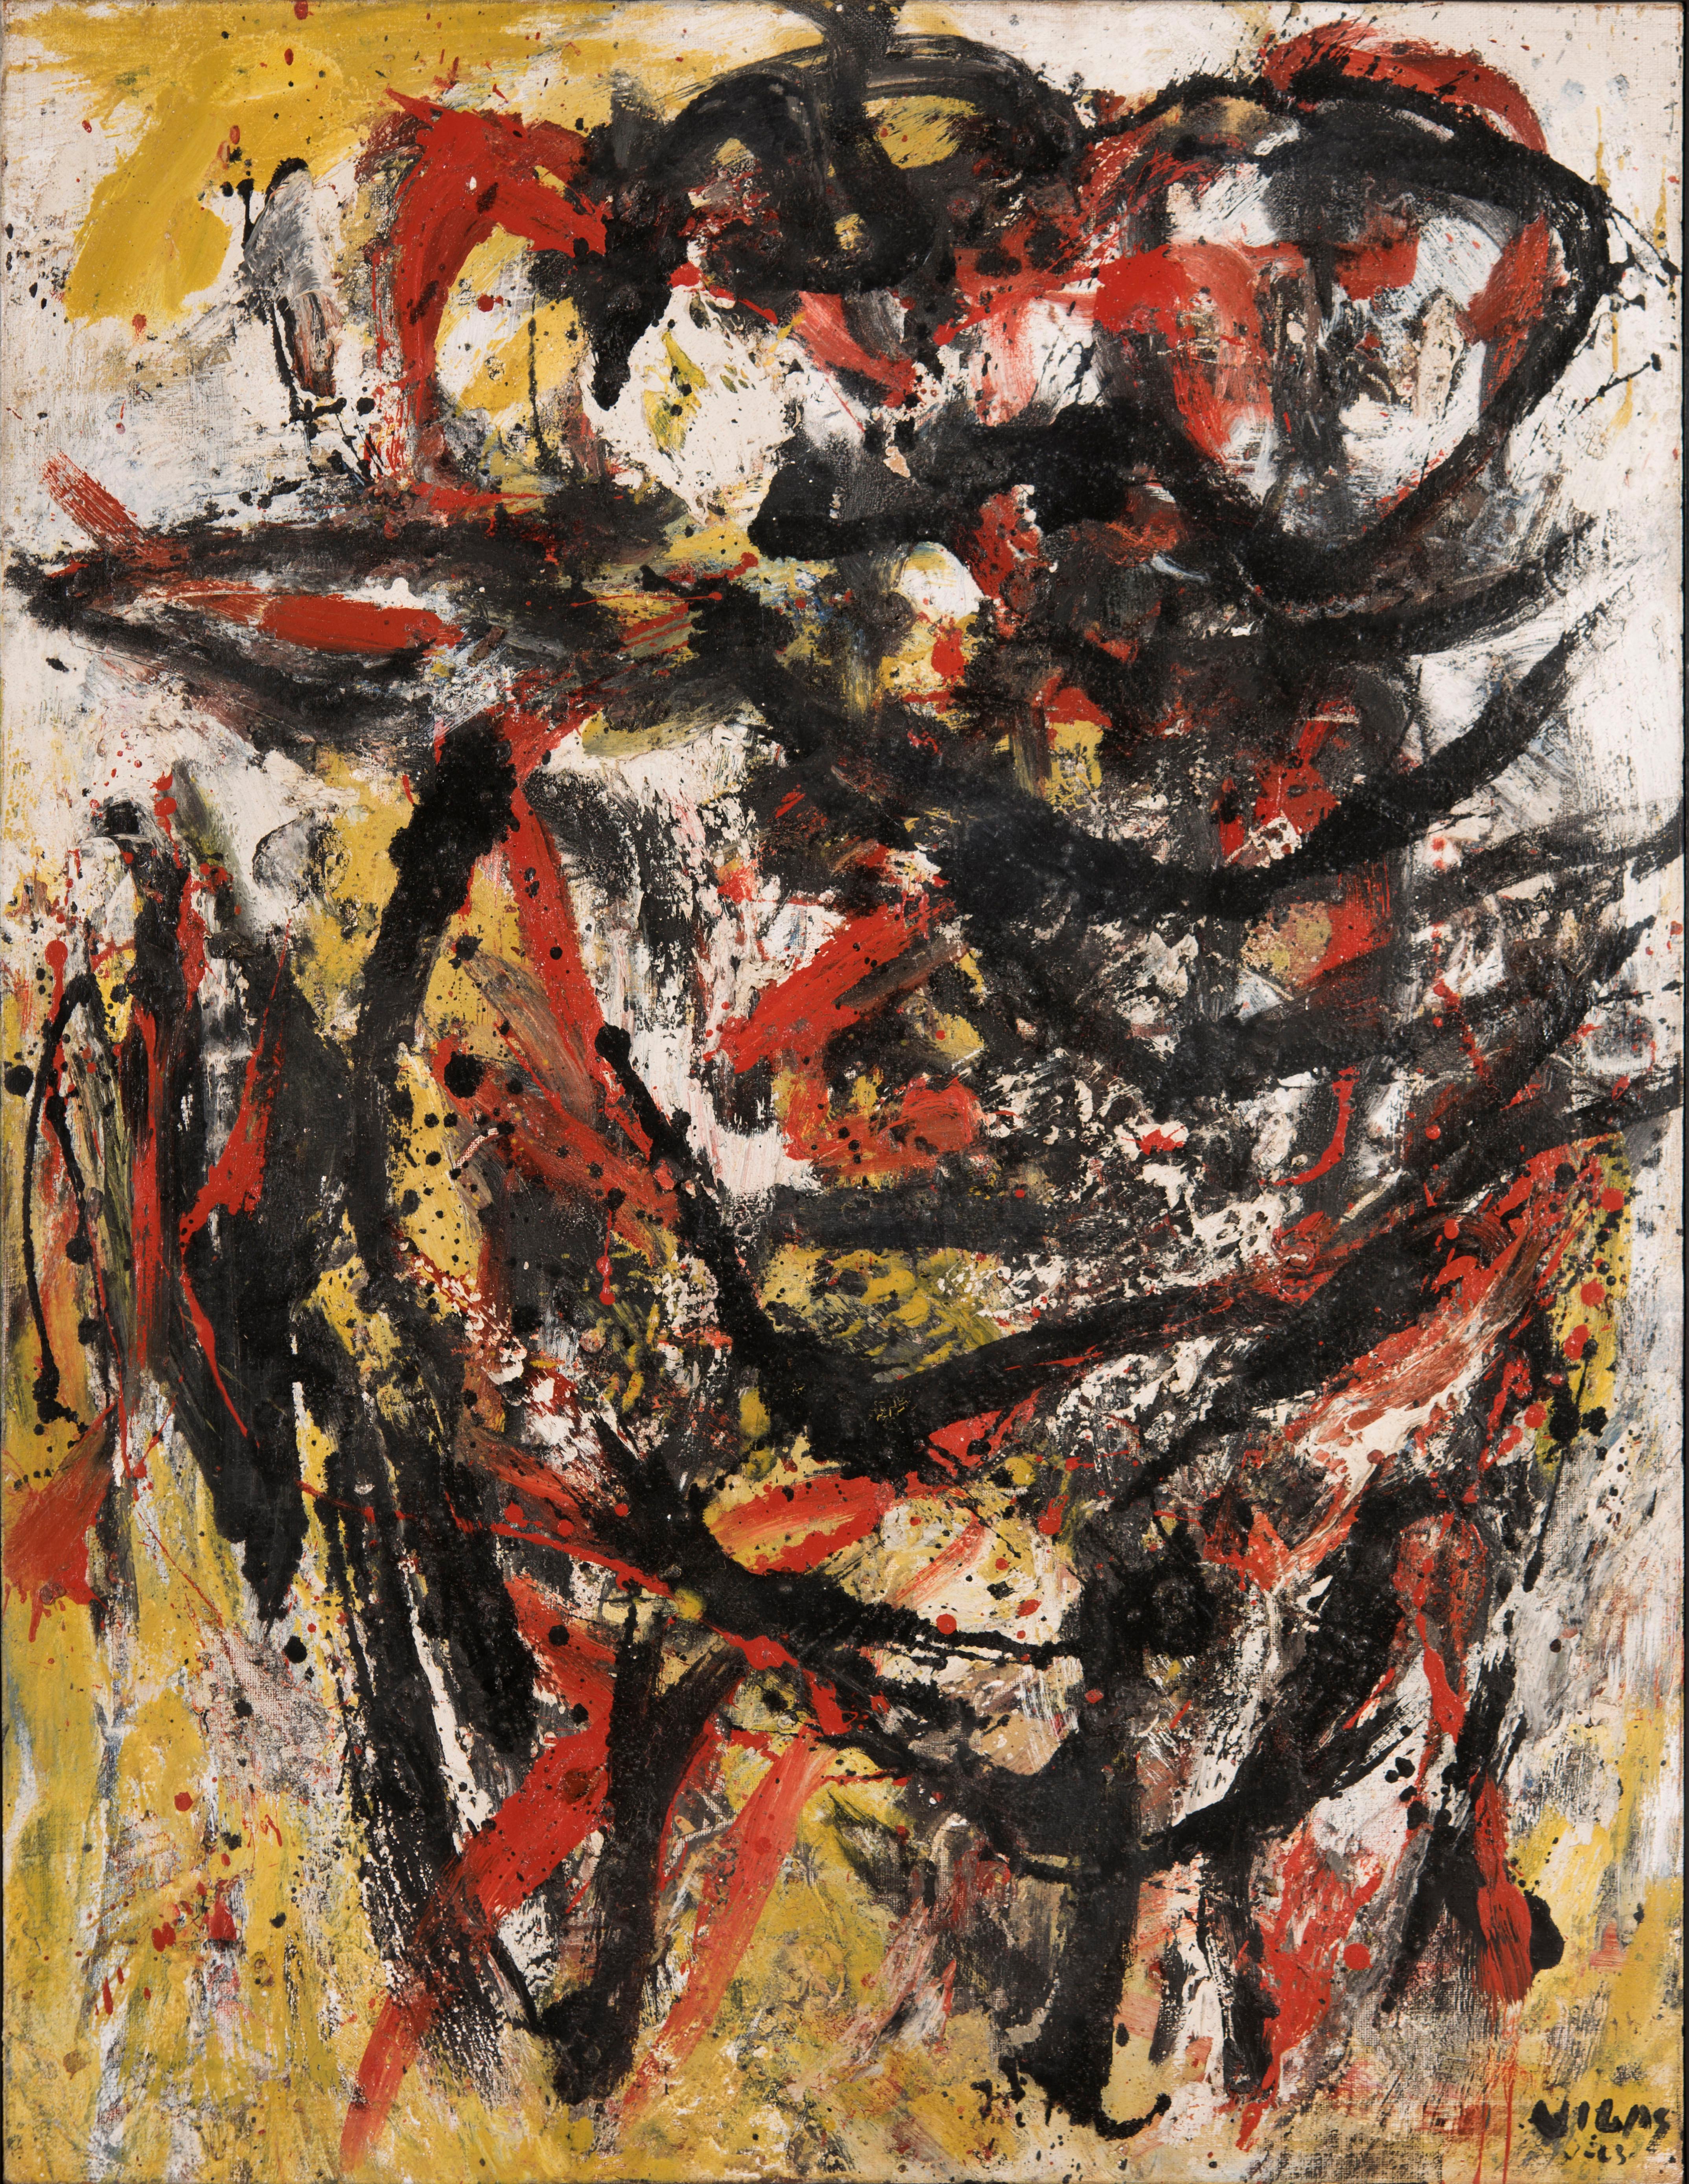 Oswaldo Vigas, Terricola, 1963, Huile sur toile, 116 x 90 cm, 45,6 x 35,4 pouces.